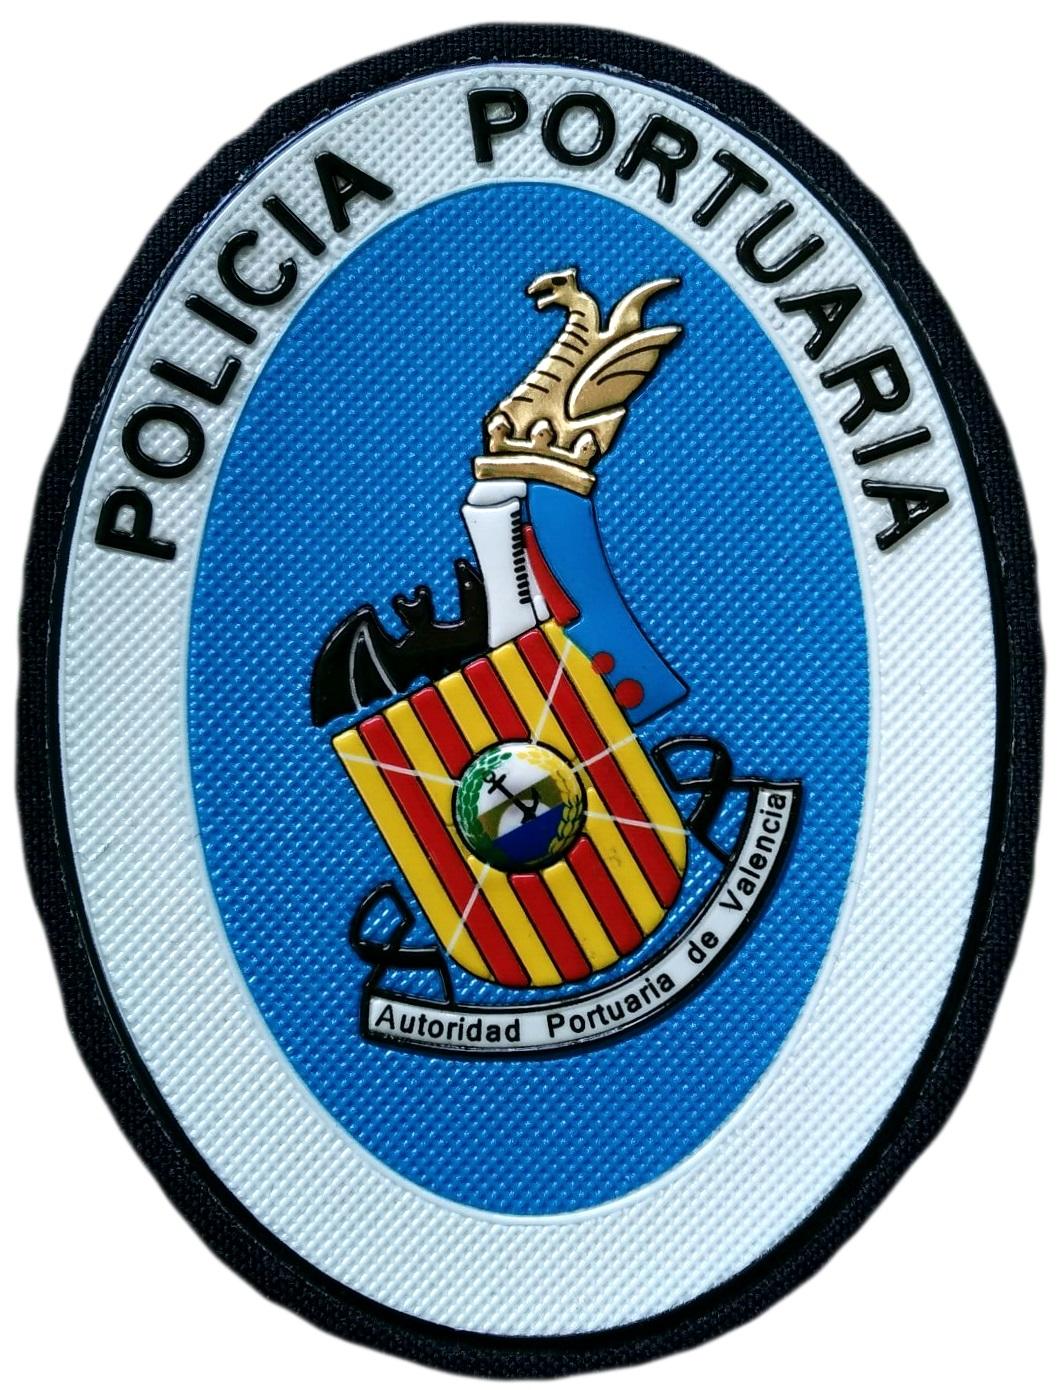 Placa Policía Portuaria